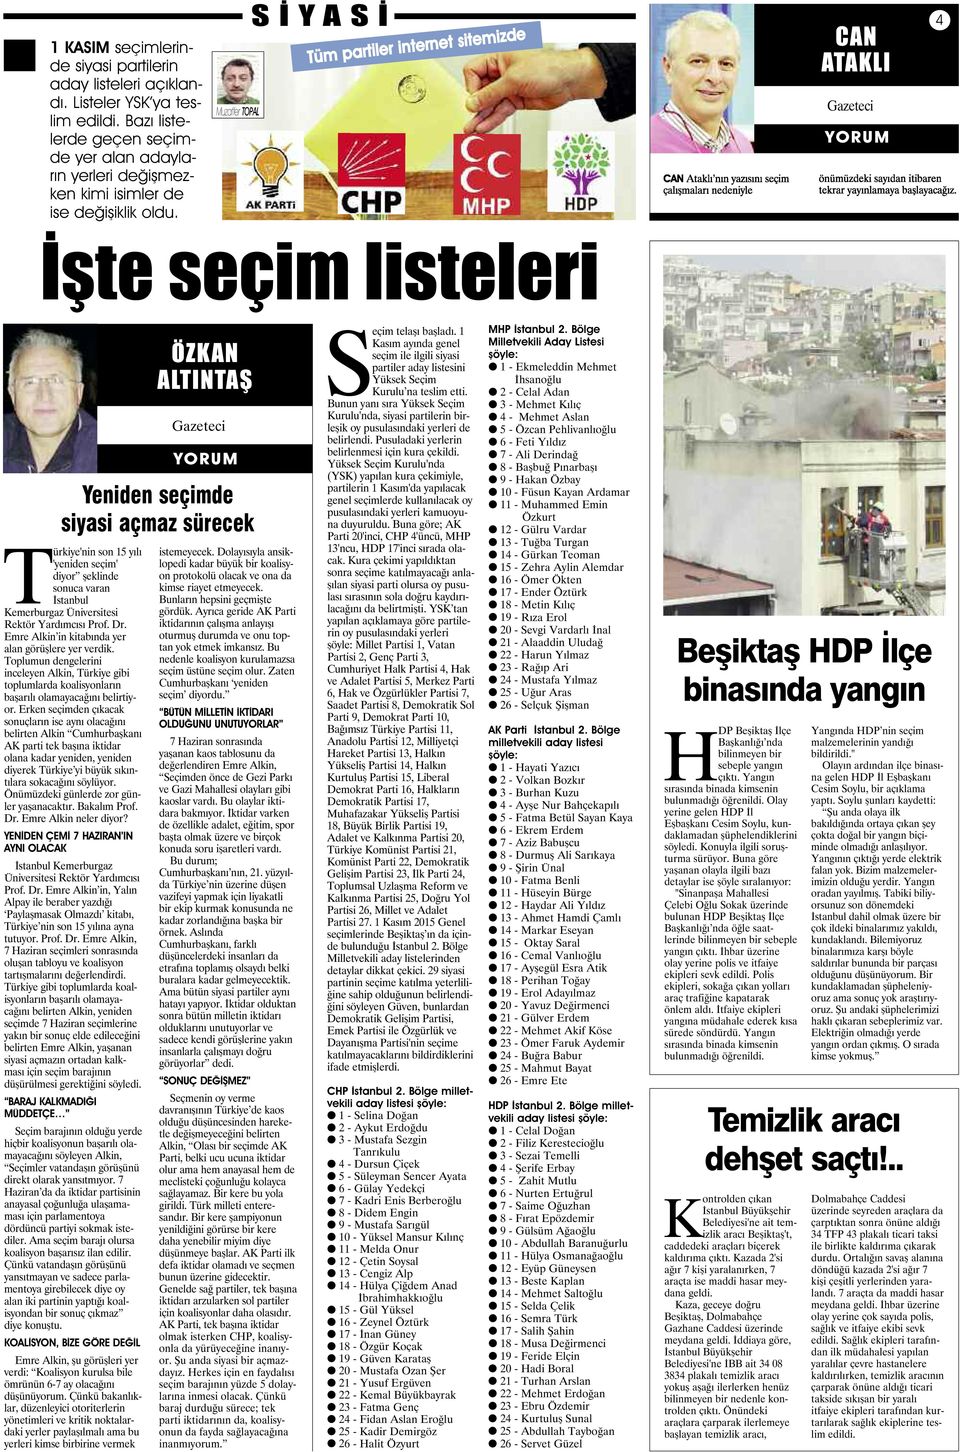 Muzaffer TOPAL S İ Y A S İ Tüm partiler internet sitemizde CAN ATAKLI Gazeteci 4 İşte seçim listeleri Türkiye'nin son 15 yılı 'yeniden seçim' diyor şeklinde sonuca varan İstanbul Kemerburgaz